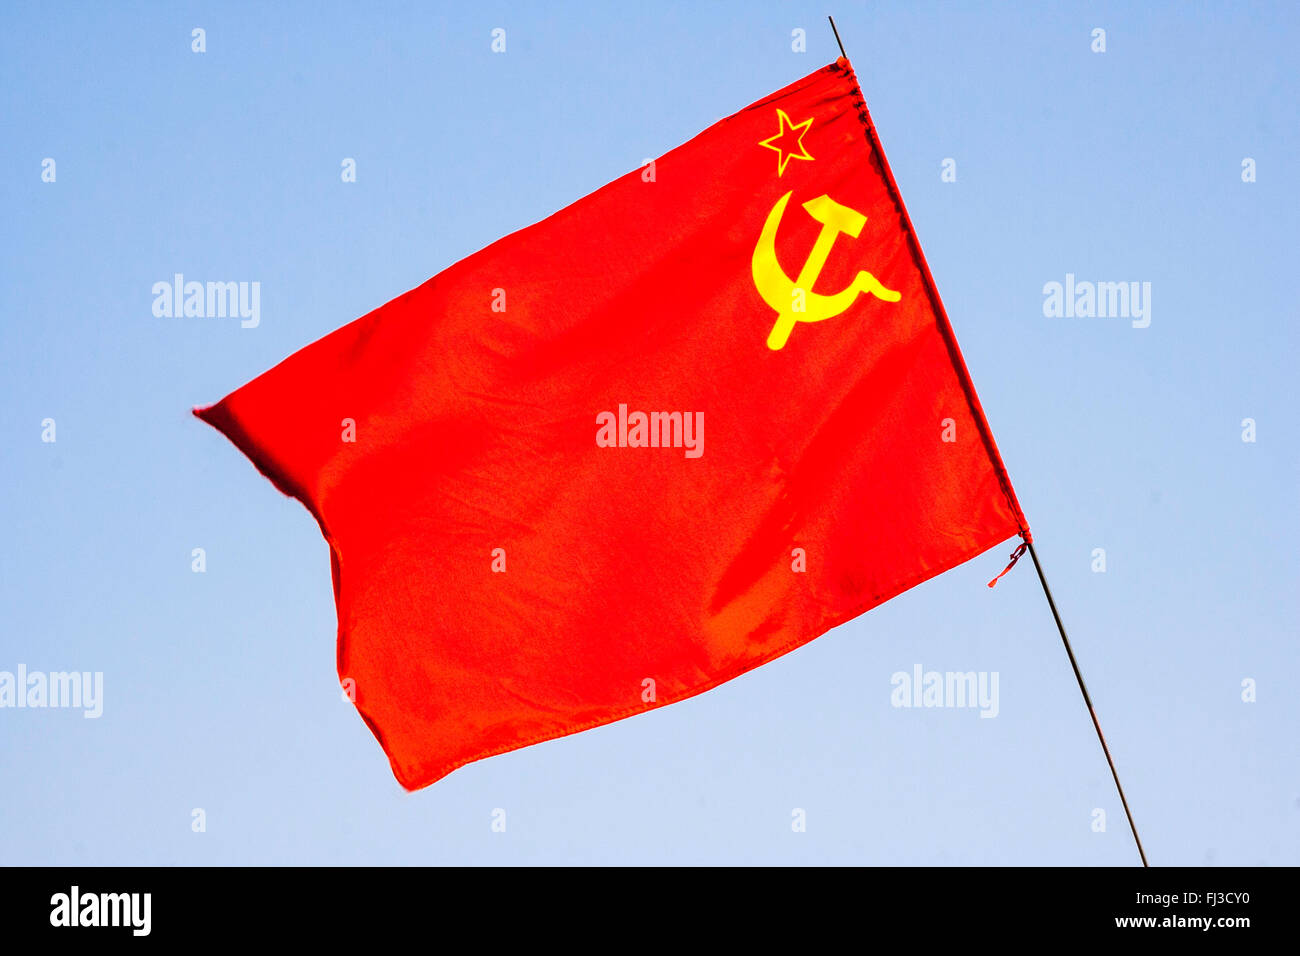 Martillo y bandera de la hoz fotografías e imágenes de alta resolución -  Alamy